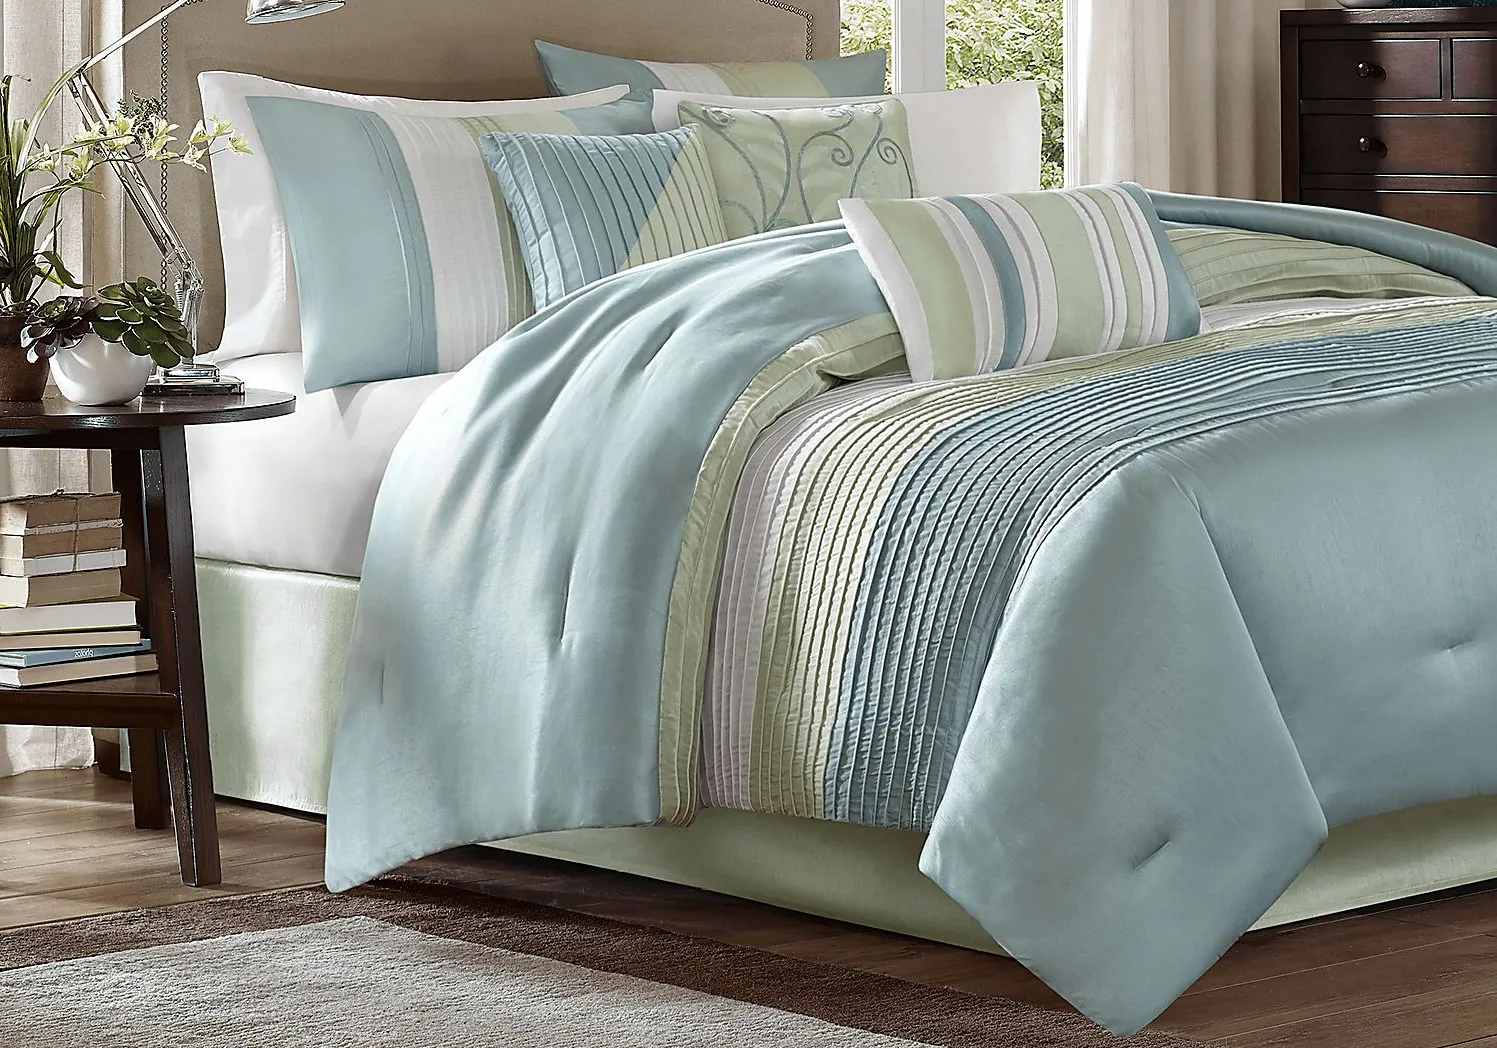 Brenna Blue/Green 7 Pc Queen Comforter Set